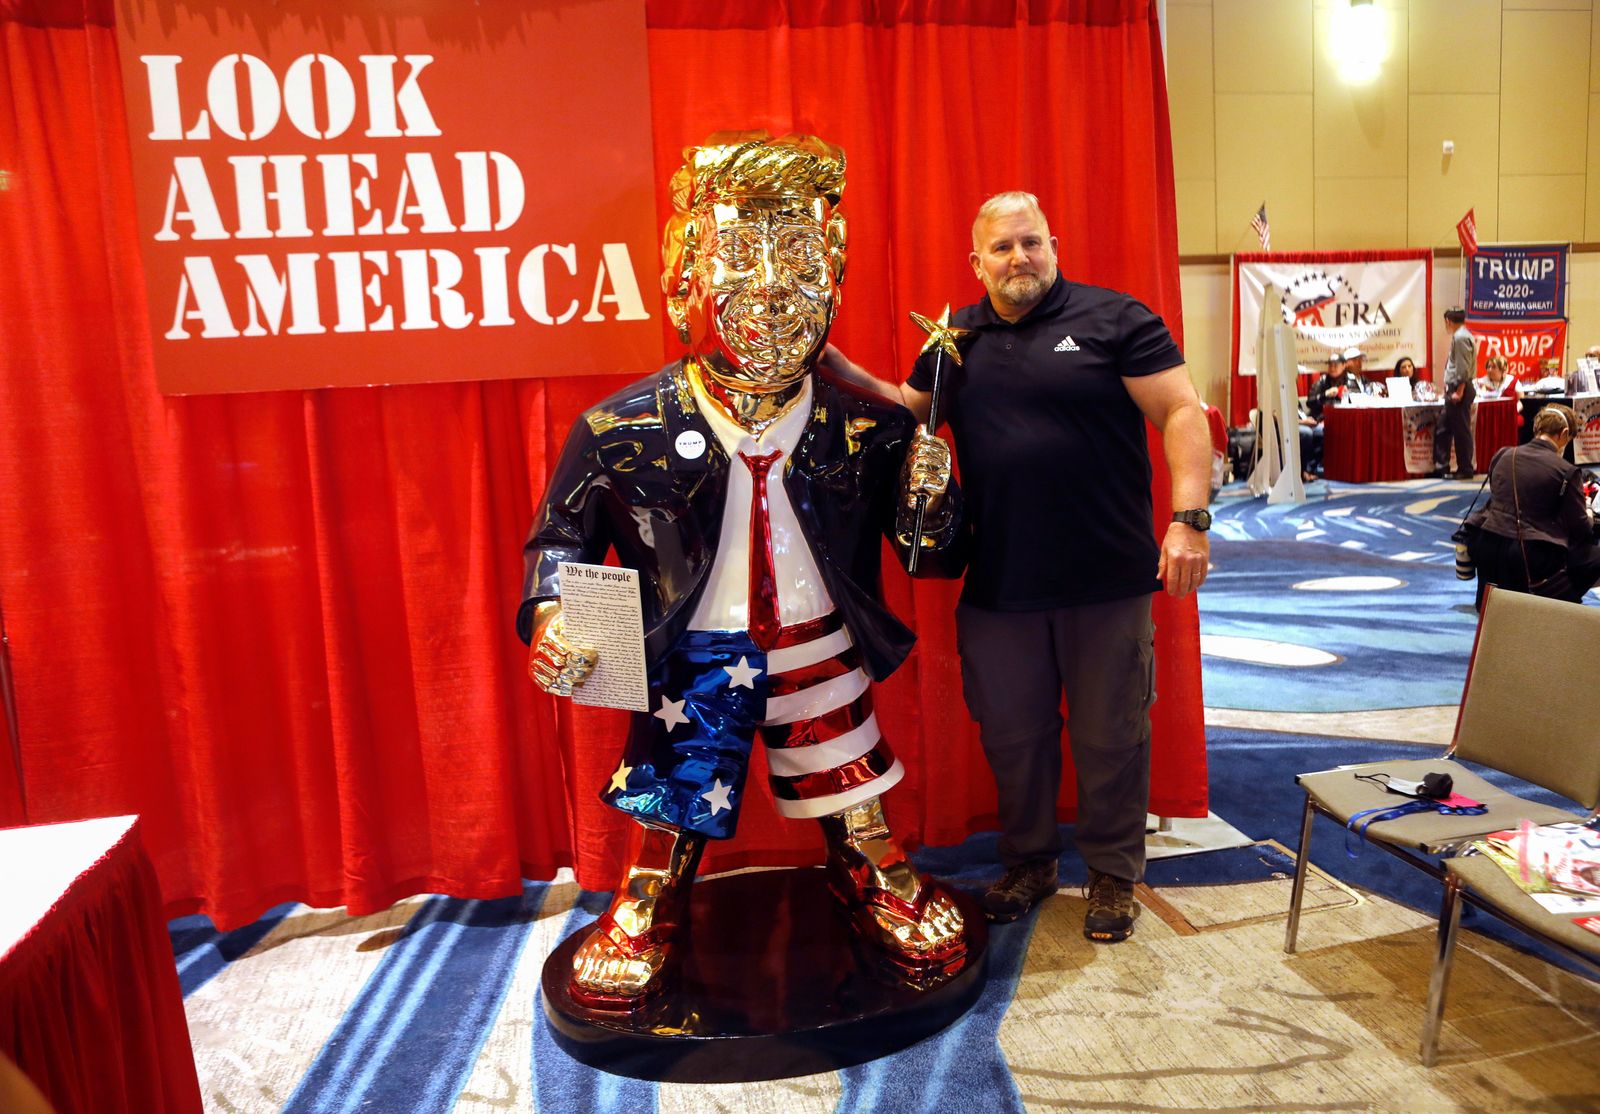 أحد المشاركين في مؤتمر العمل السياسي المحافظ يأخذ صورة مع تمثال ذهبي للرئيس السابق دونالد ترمب - REUTERS